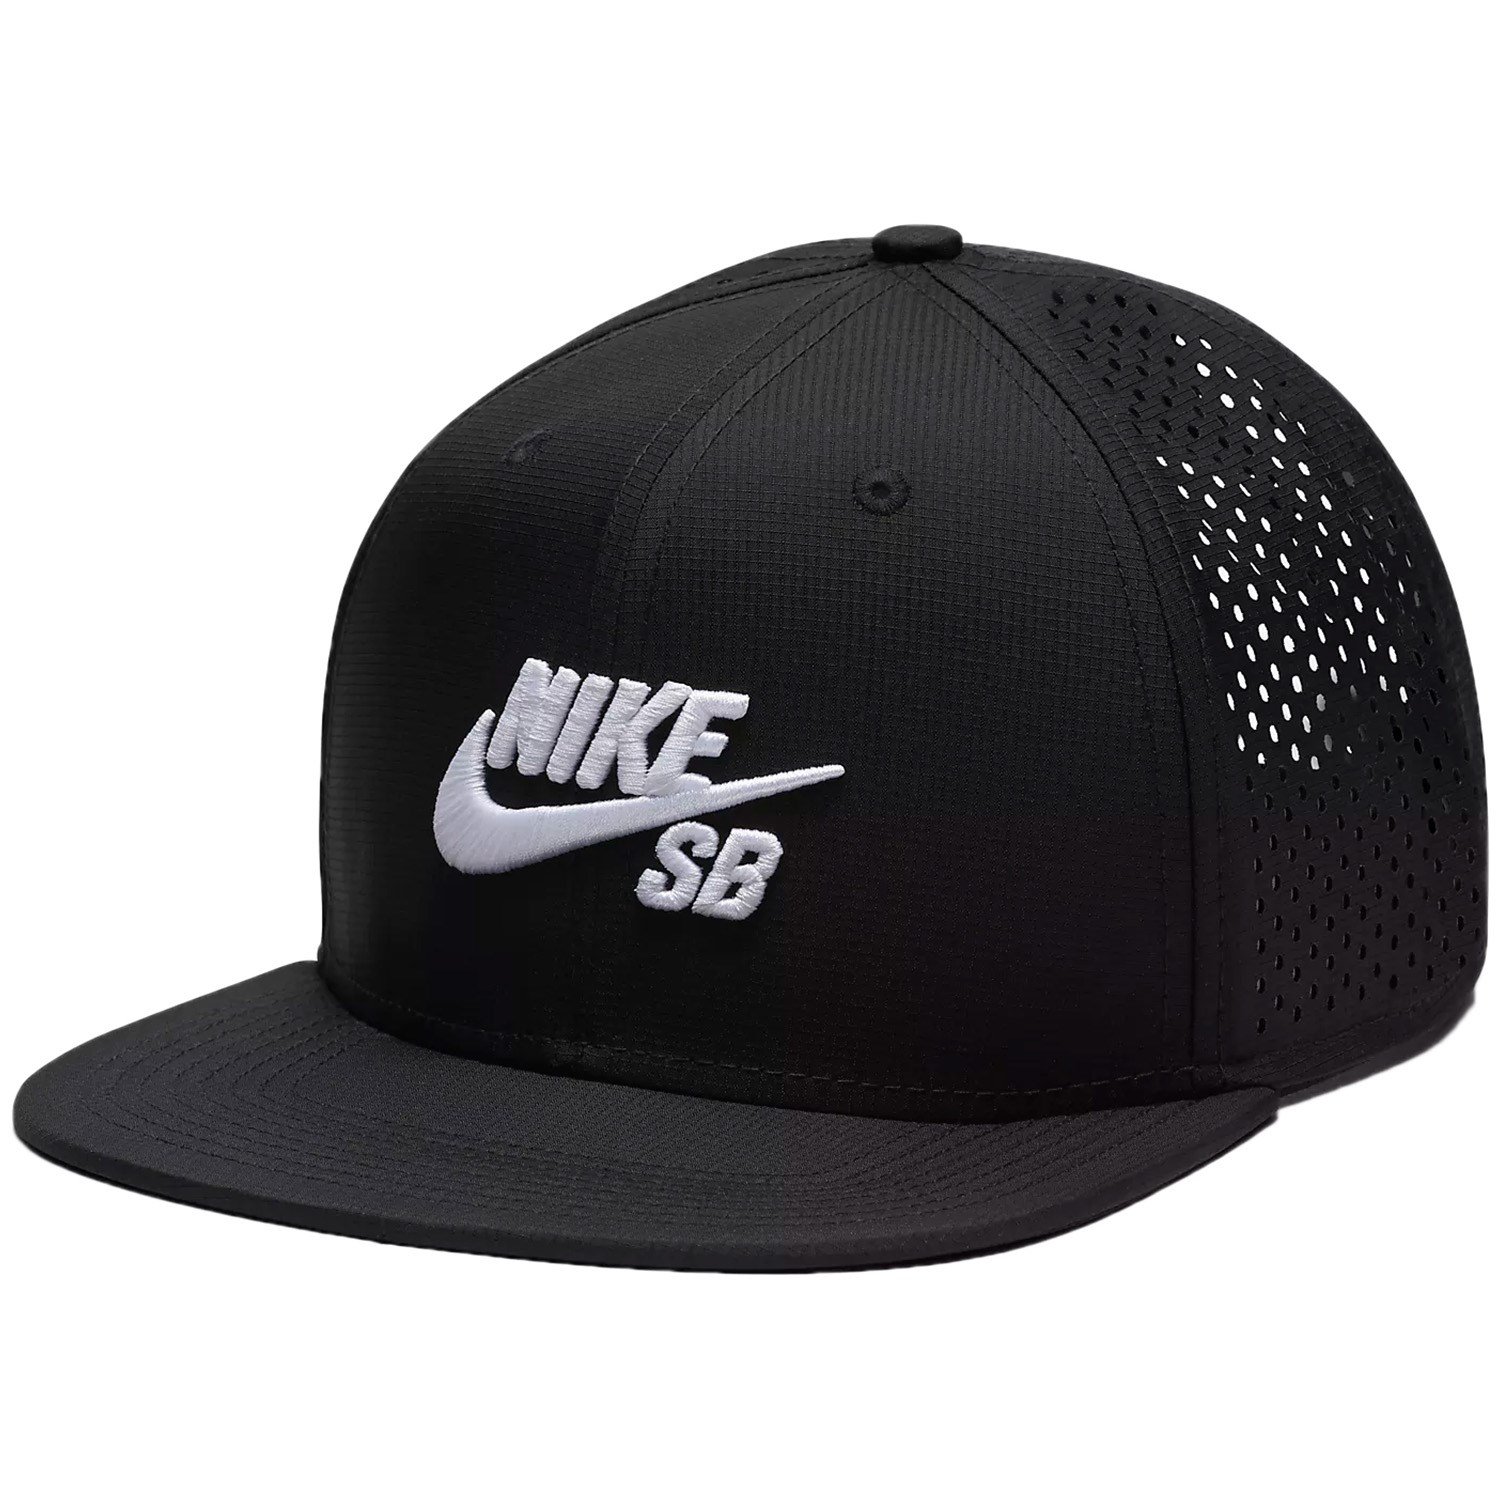 Buy > nike skate hat > in stock